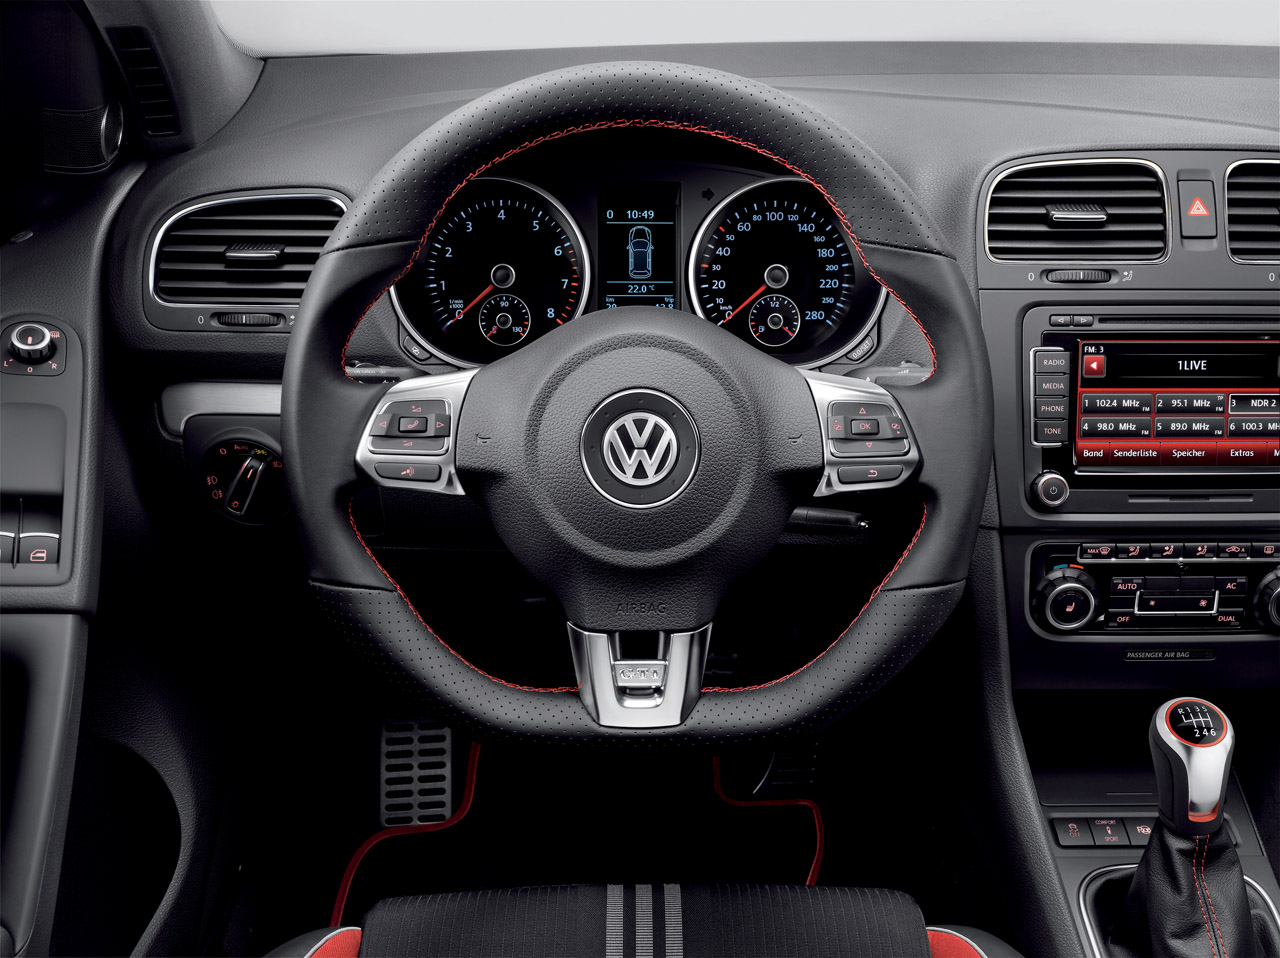 Volkswagen Golf Limited Edition